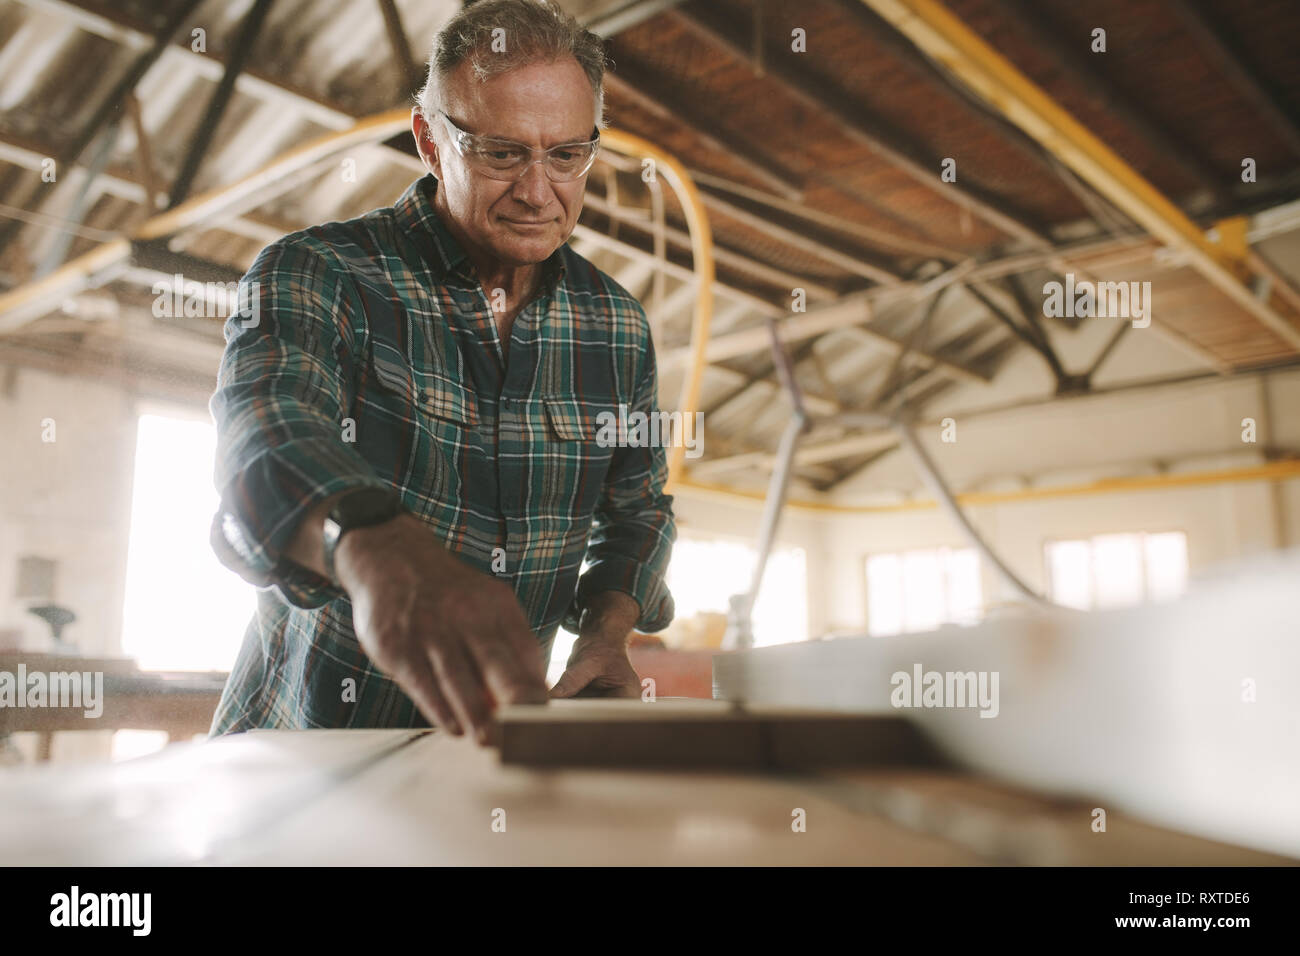 Ältere männliche Tischler Arbeiten an elektrische Tisch sah Maschine Schneiden von Holz Planken. Erfahrene reife Tischler arbeiten in der Schreinerei. Stockfoto